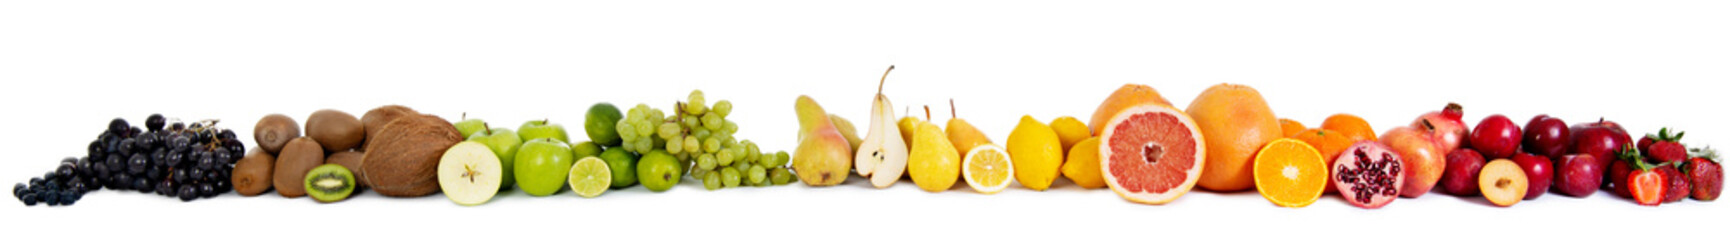 Voedsel fruit banner